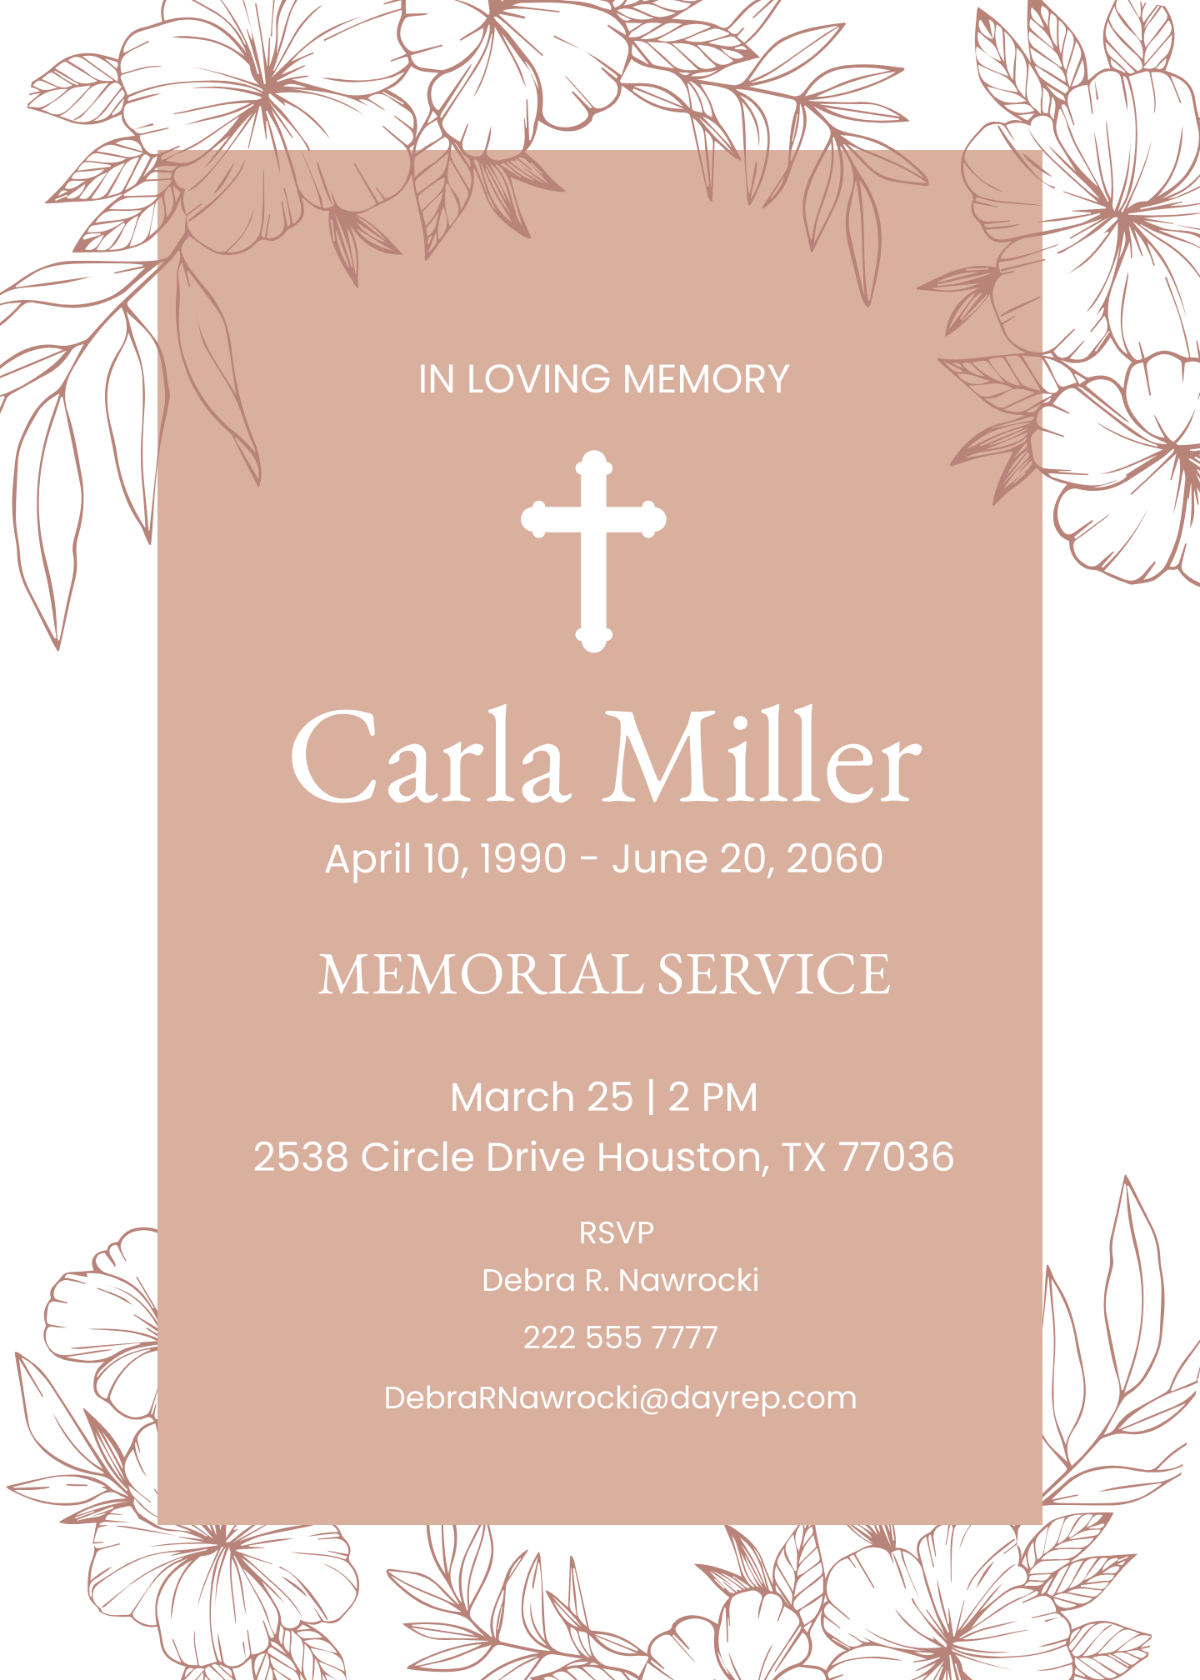 Sample Funeral Memorial Invitation